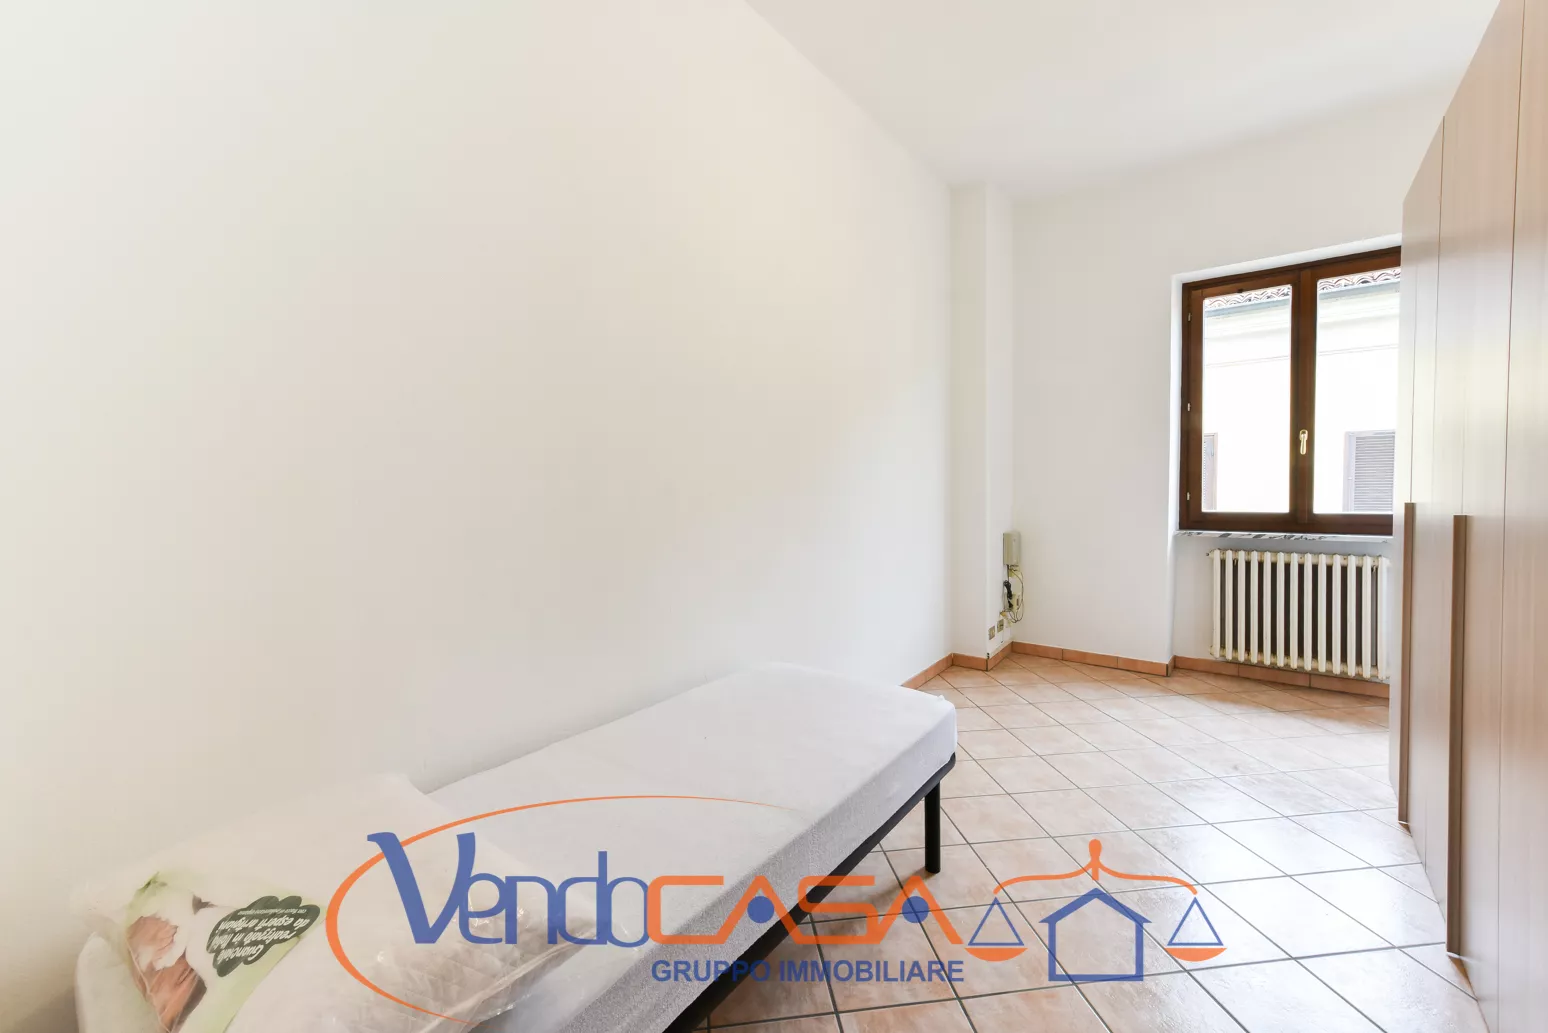 Immagine per Appartamento in vendita a Carmagnola via Valobra 69